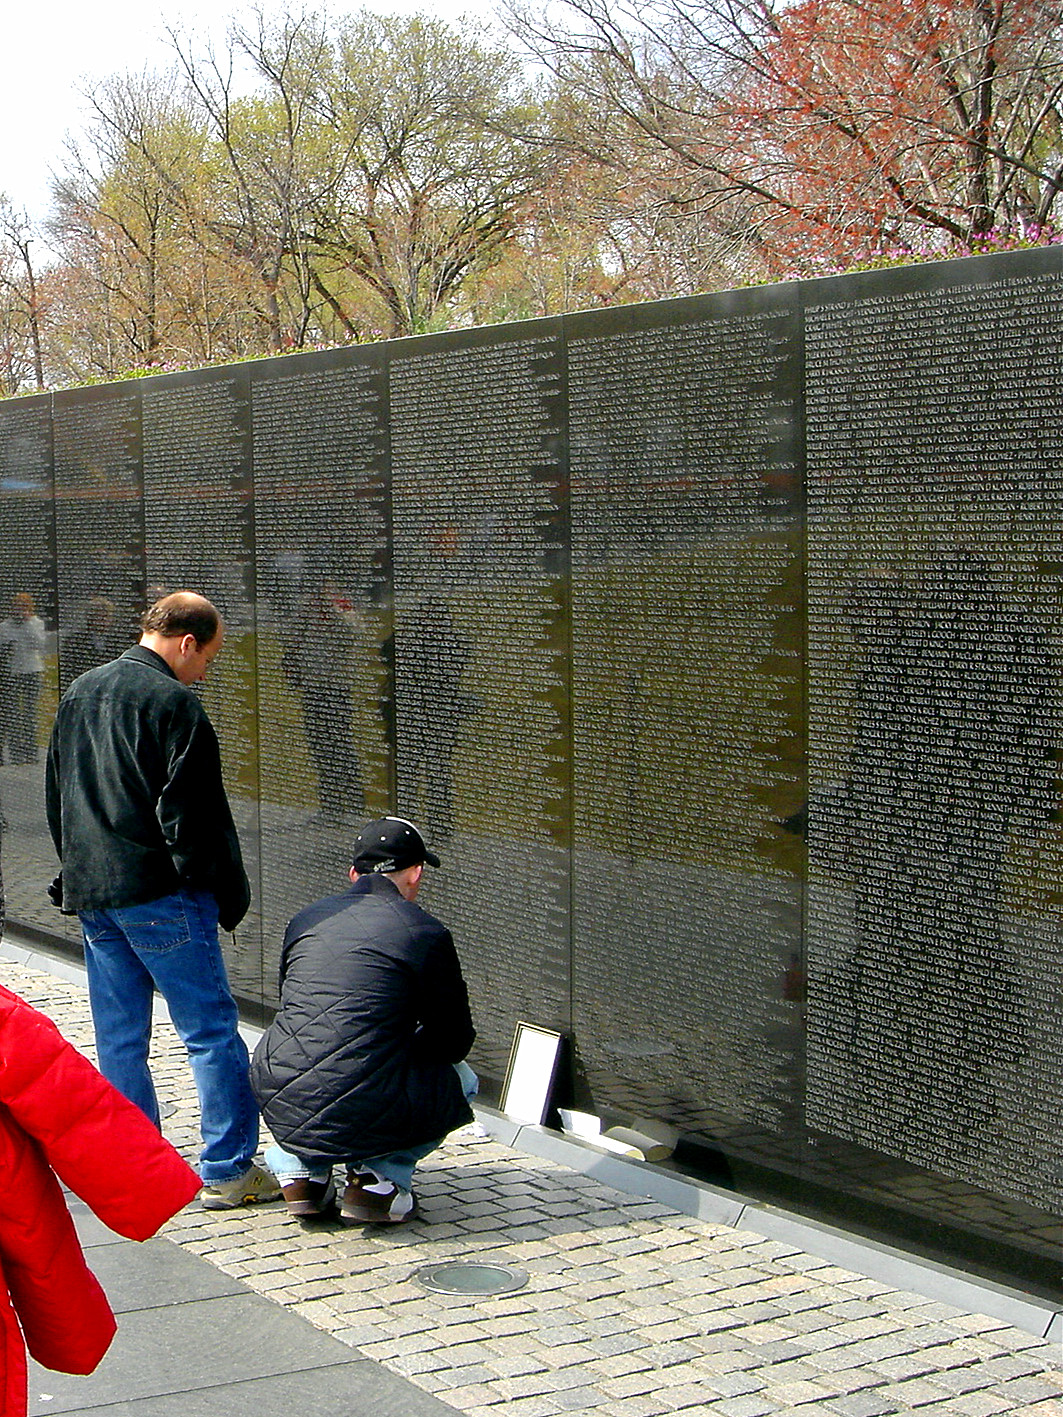 v字型碑体构成,用于纪念越战时期服役于越南期间战死的美国士兵和将官